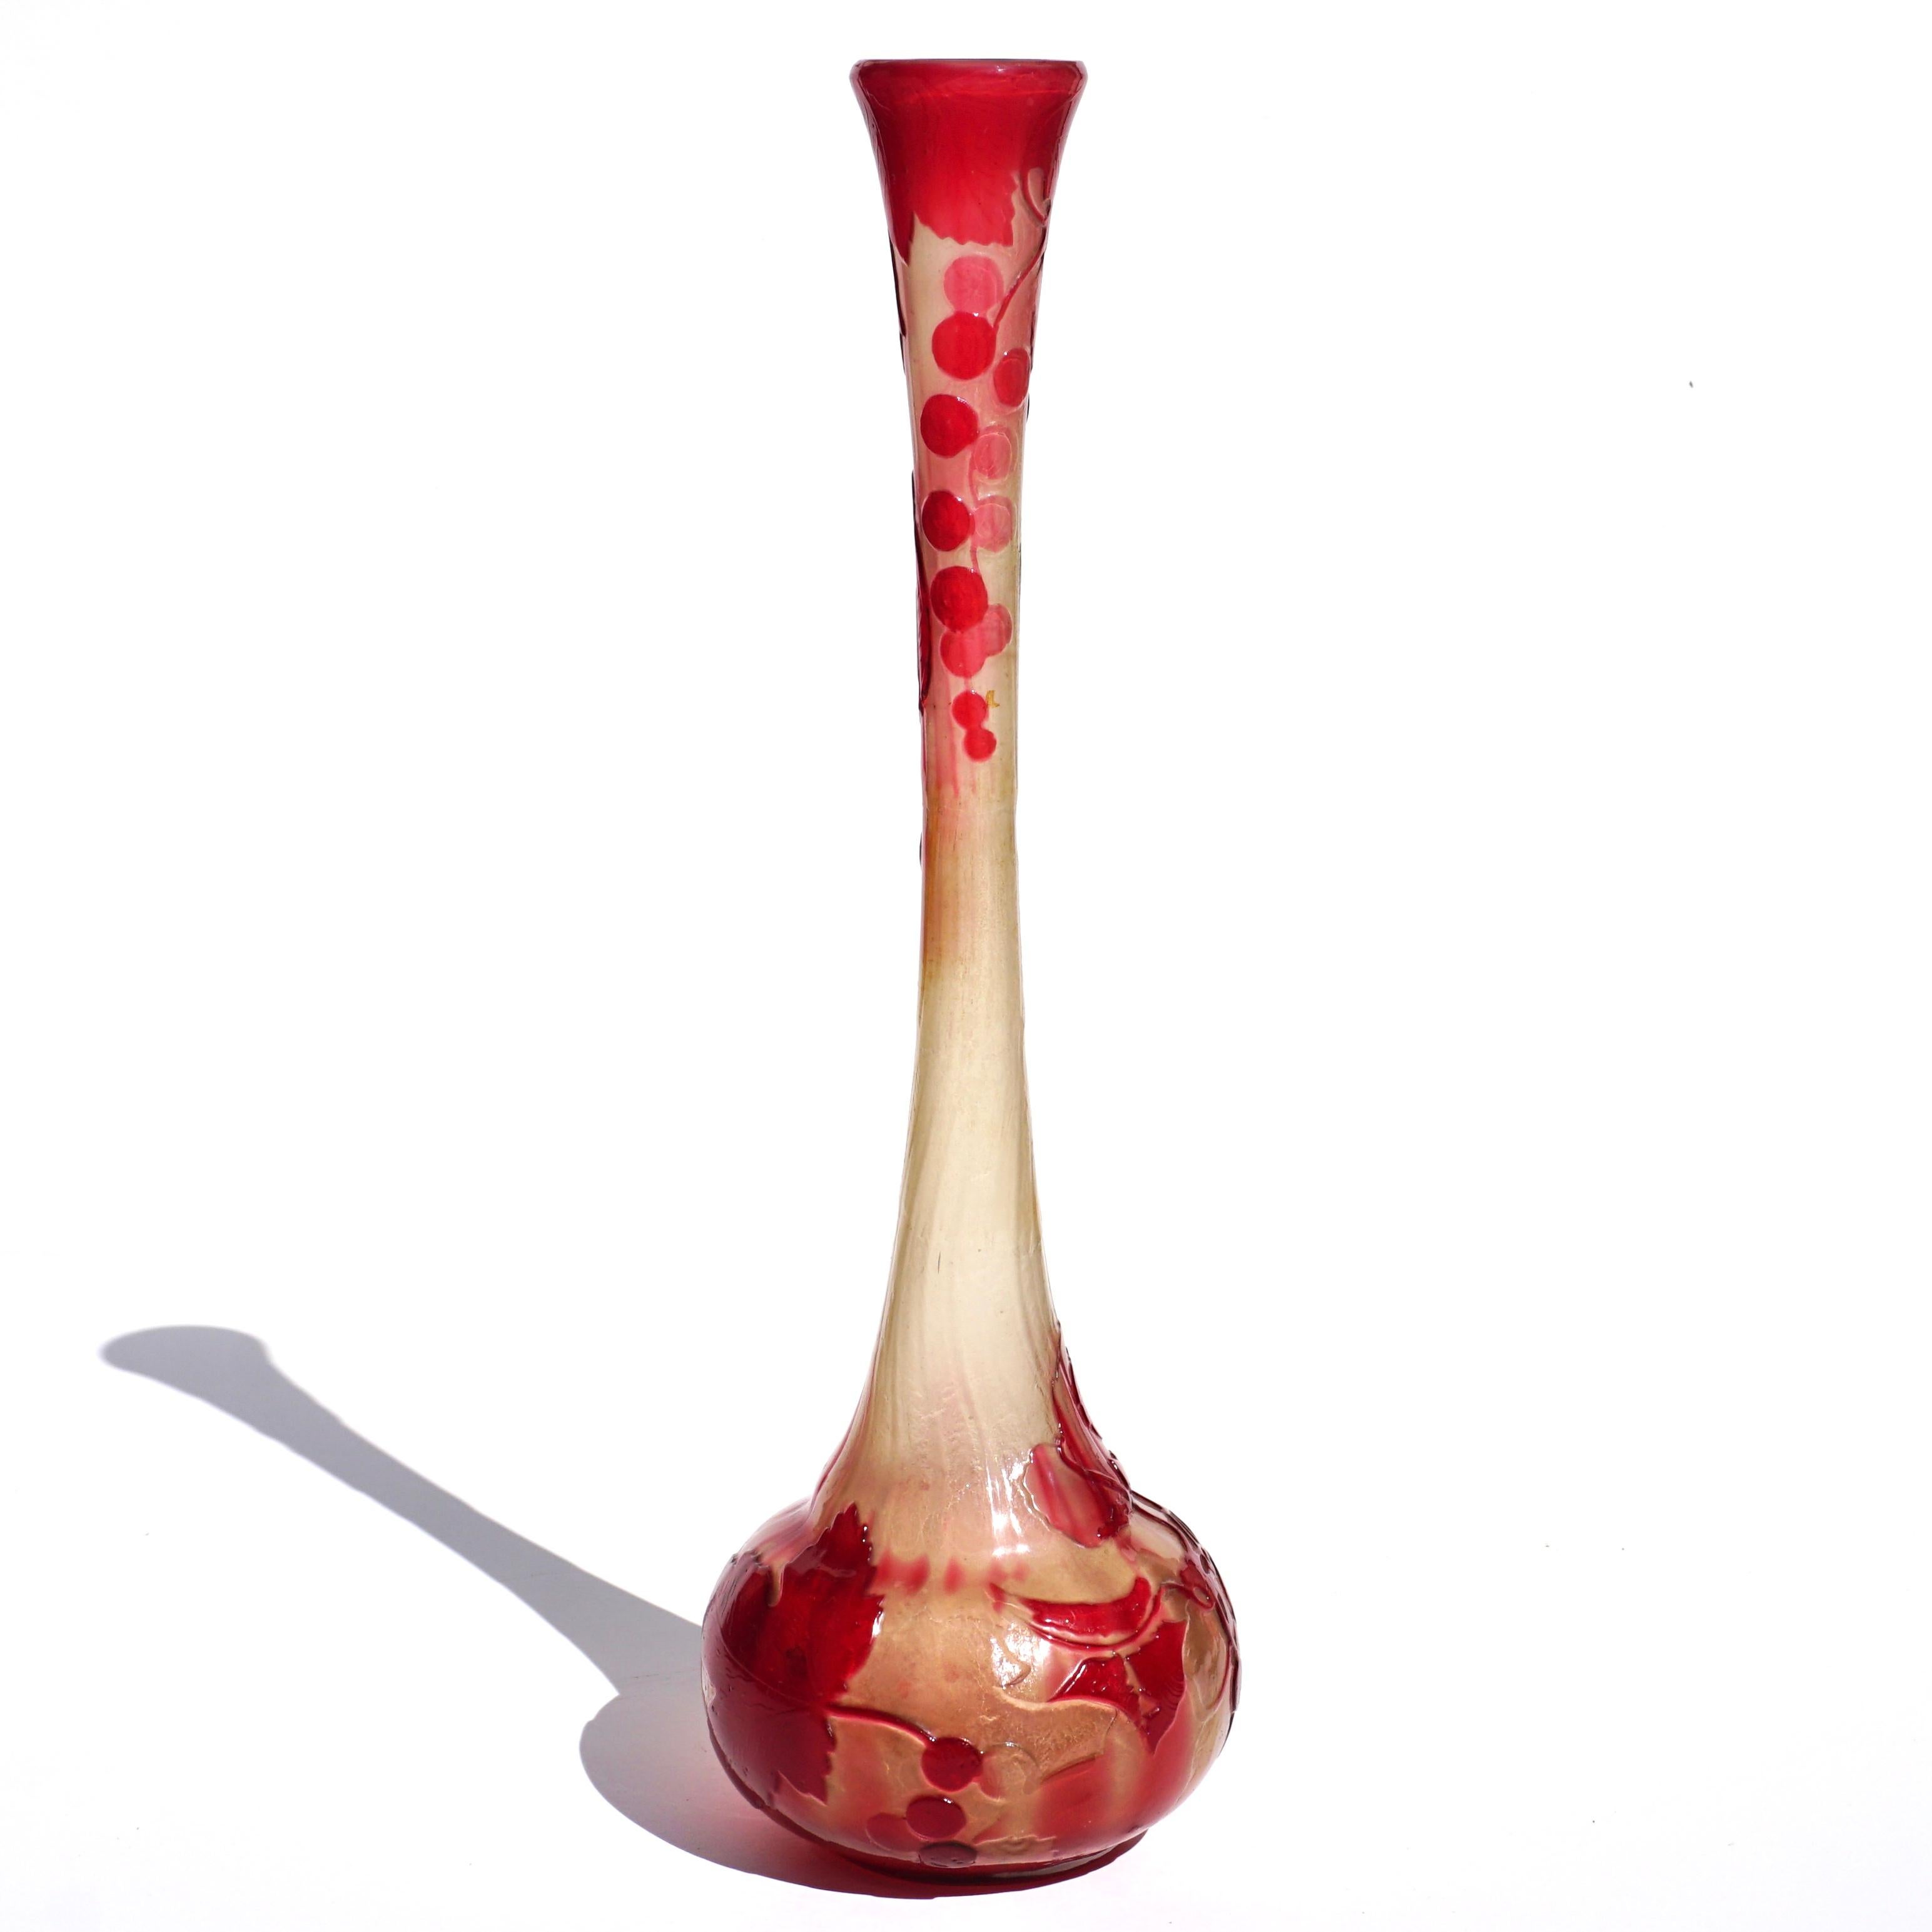 Grand vase solifleur Gallé précoce en verre camée poli au feu, circa 1900

Signé : En écriture japonaise  